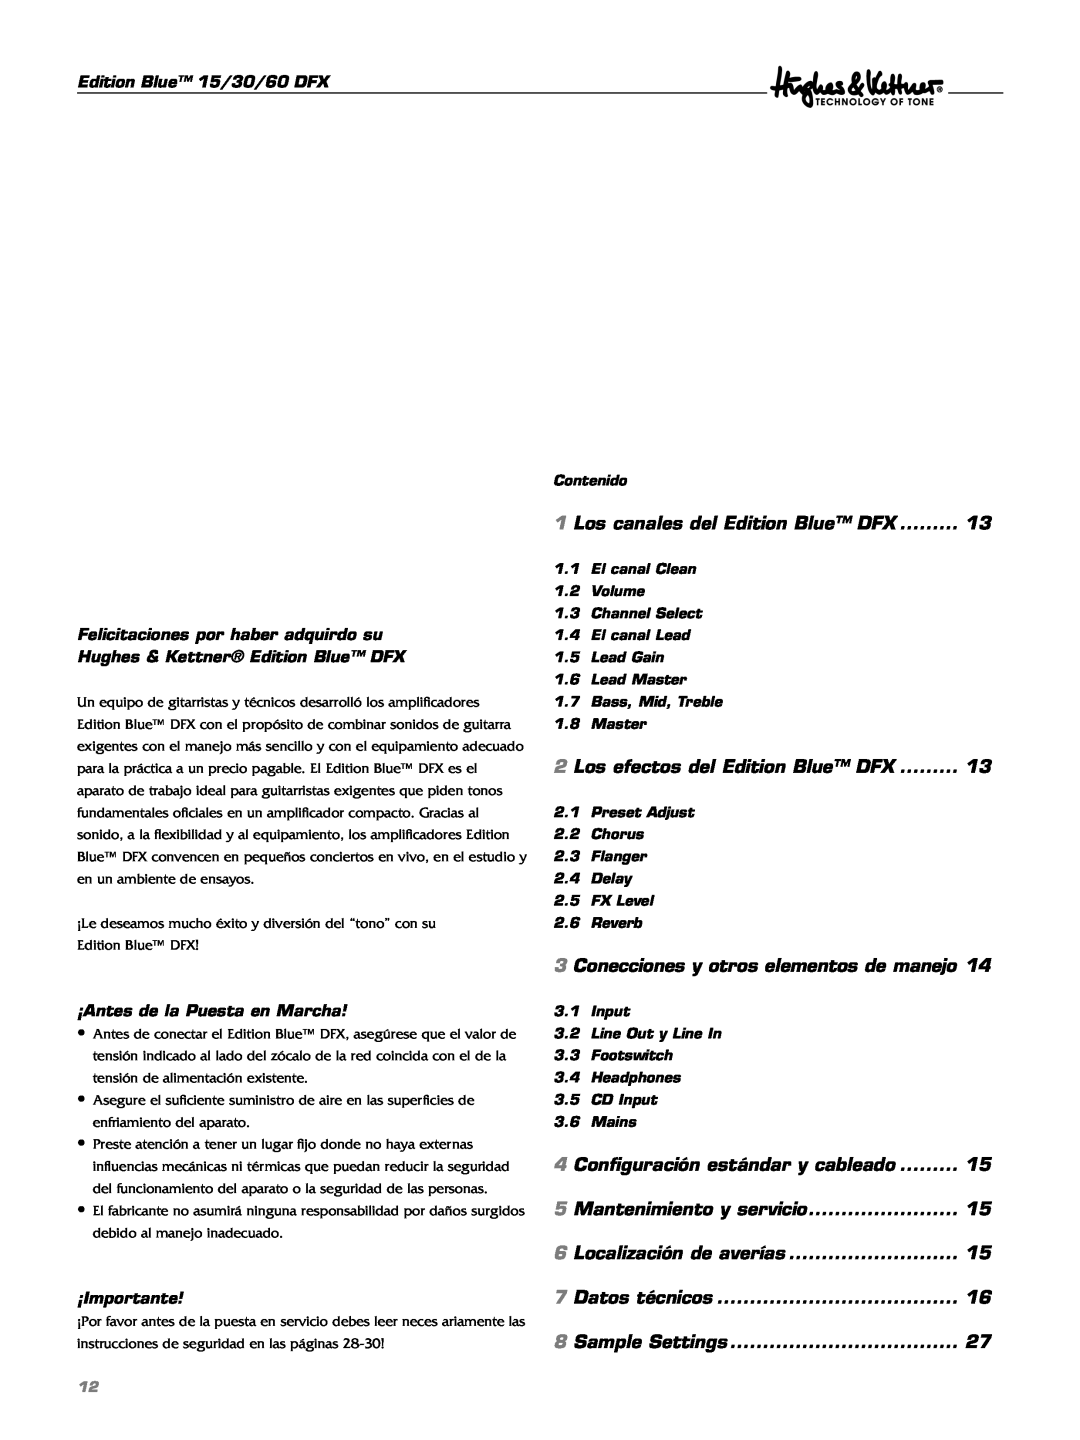 Hughes & Kettner manual Los canales del Edition Blue DFX 